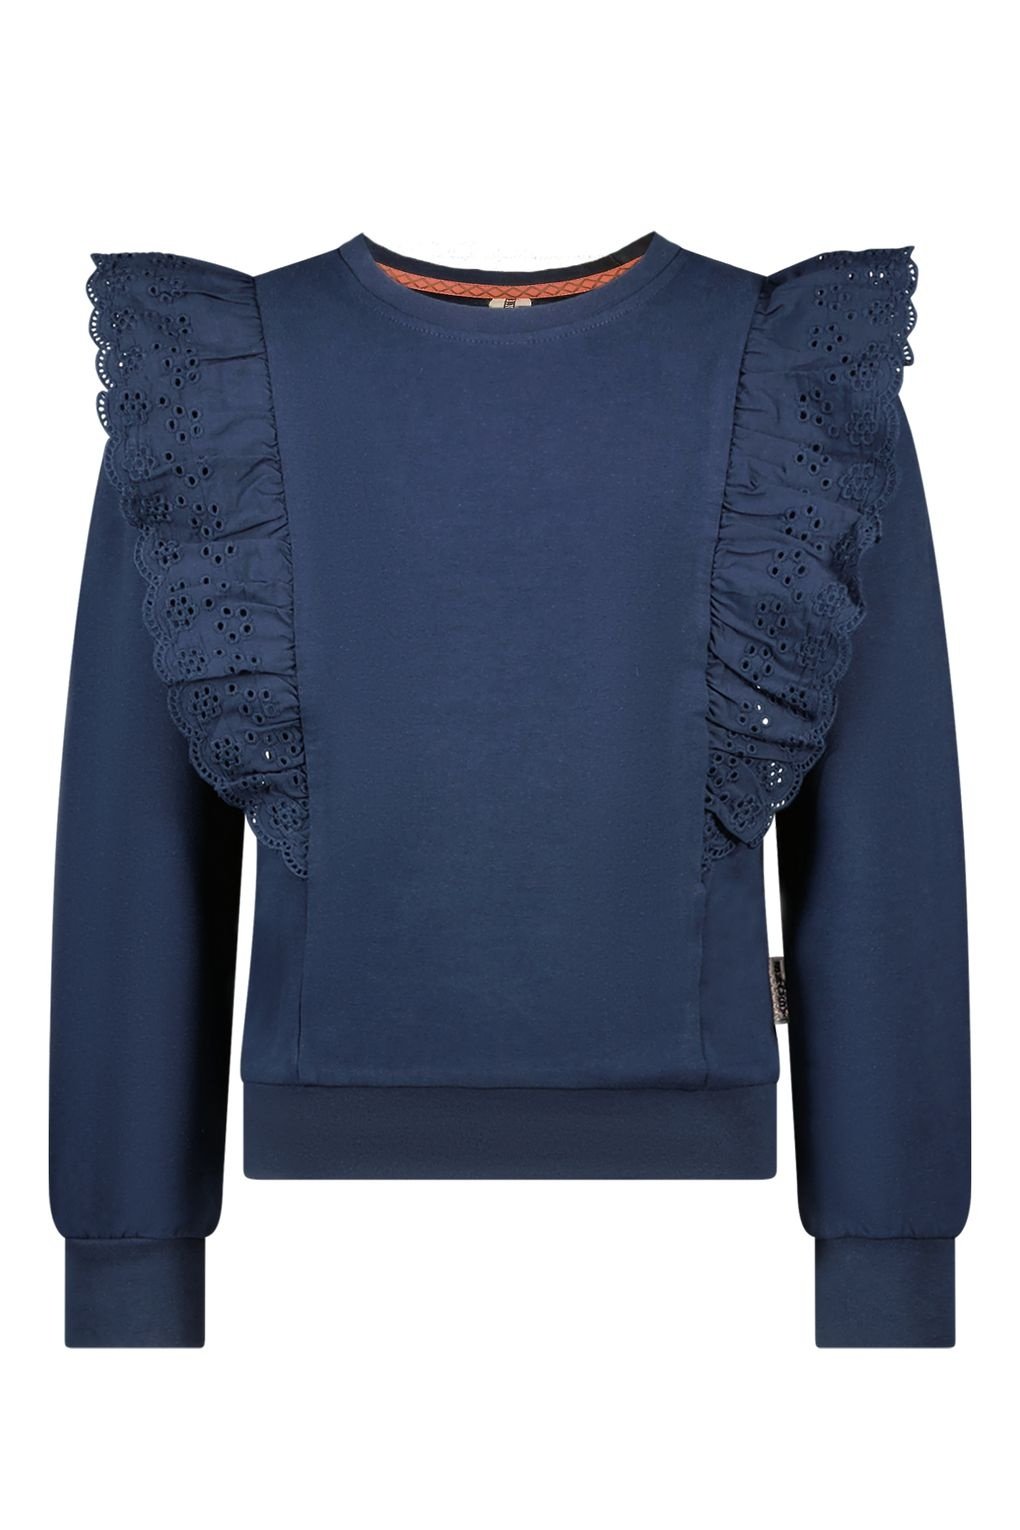 B.Nosy Meisjes sweater - Daantje - Navy blauw